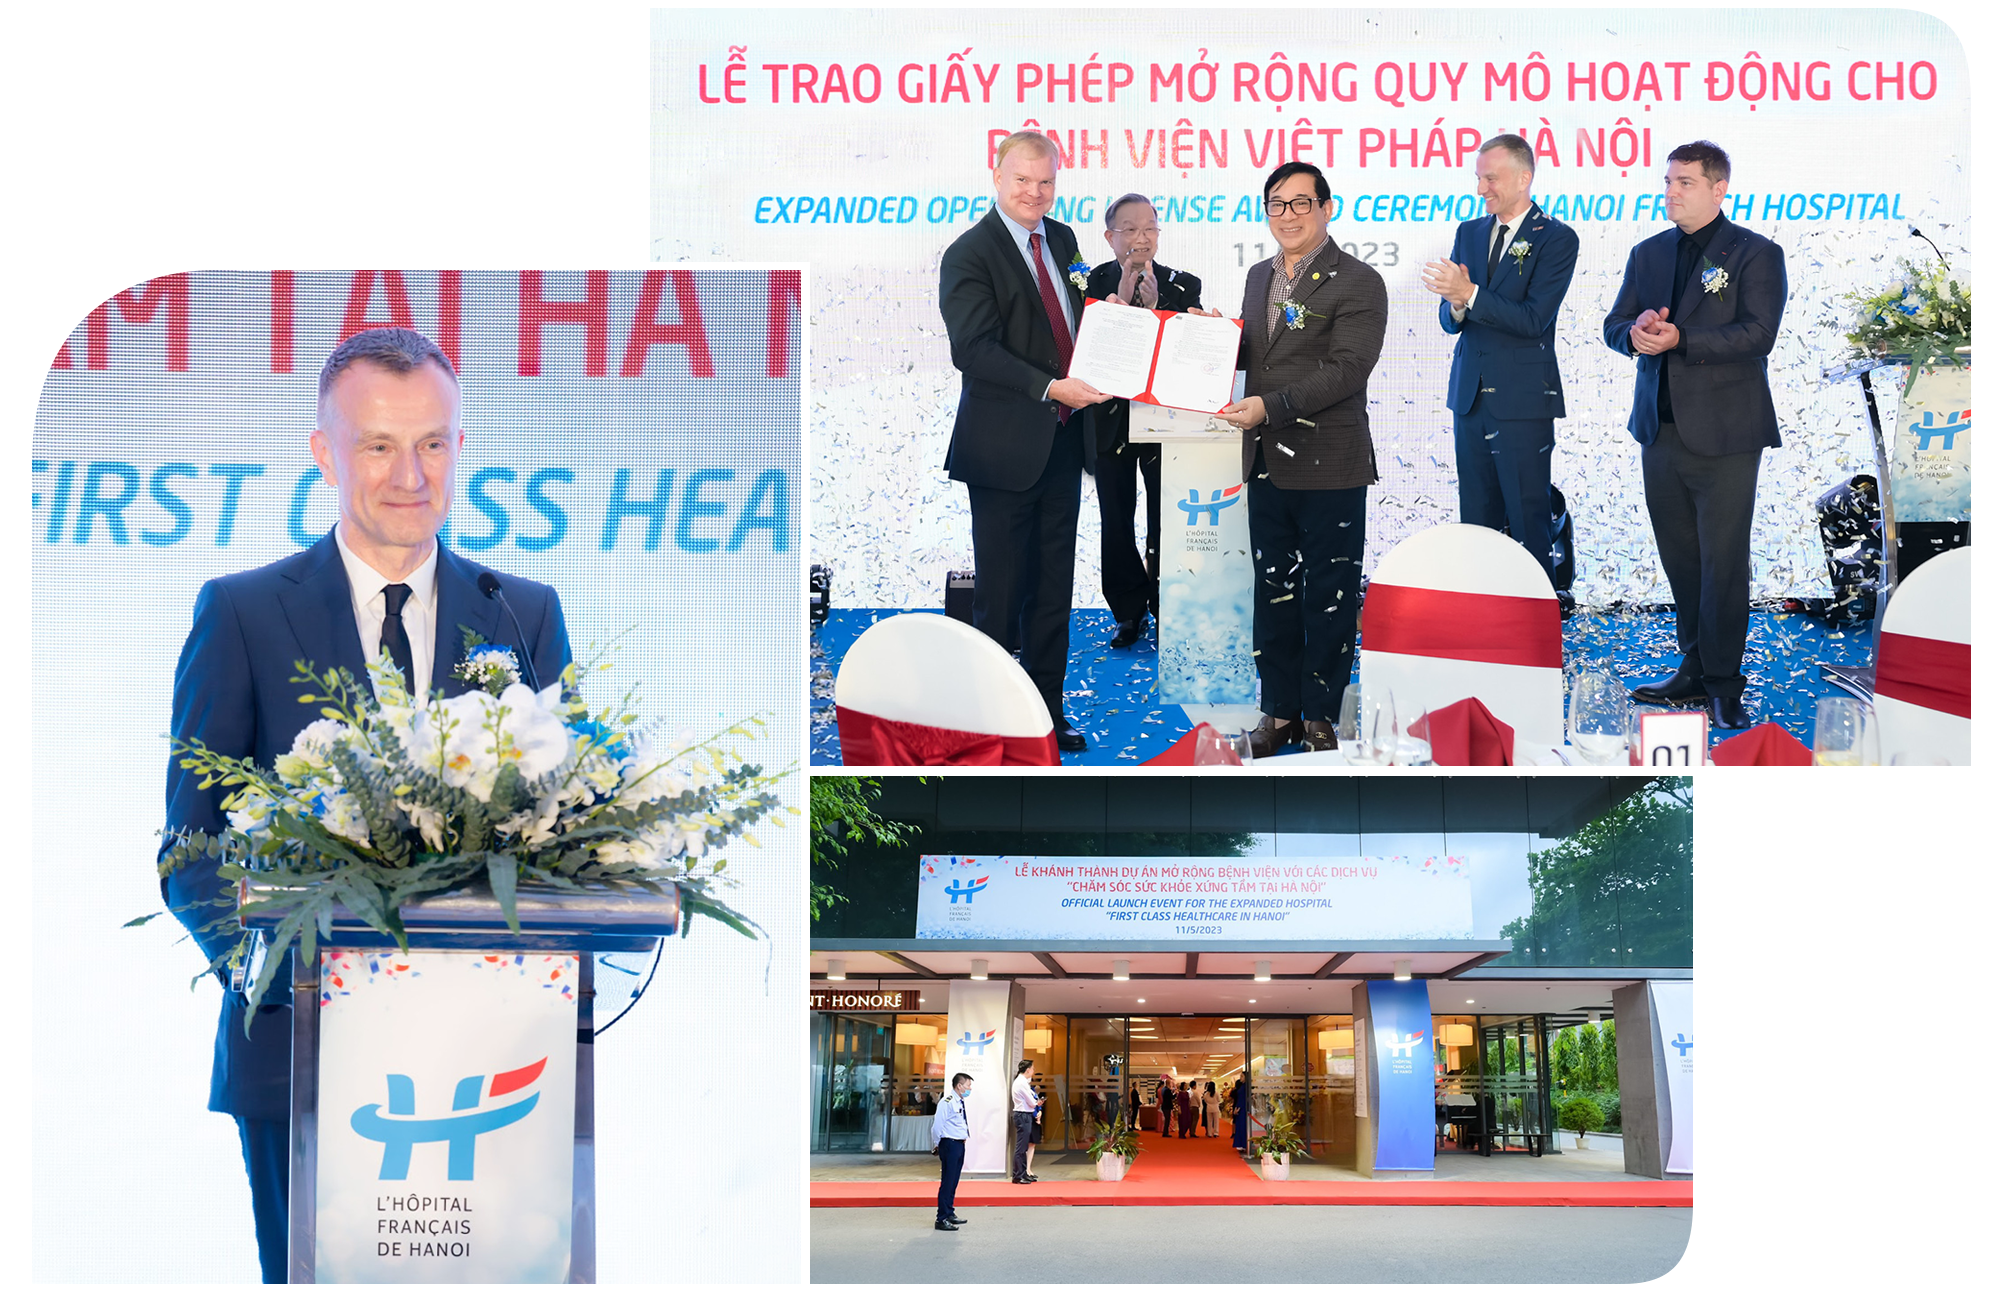 Bệnh viện Việt Pháp Hà Nội vươn tầm cao mới: Bước tiến song hành của mở rộng quy mô và đẩy mạnh trọng tâm chuyên môn y tế. - Ảnh 4.